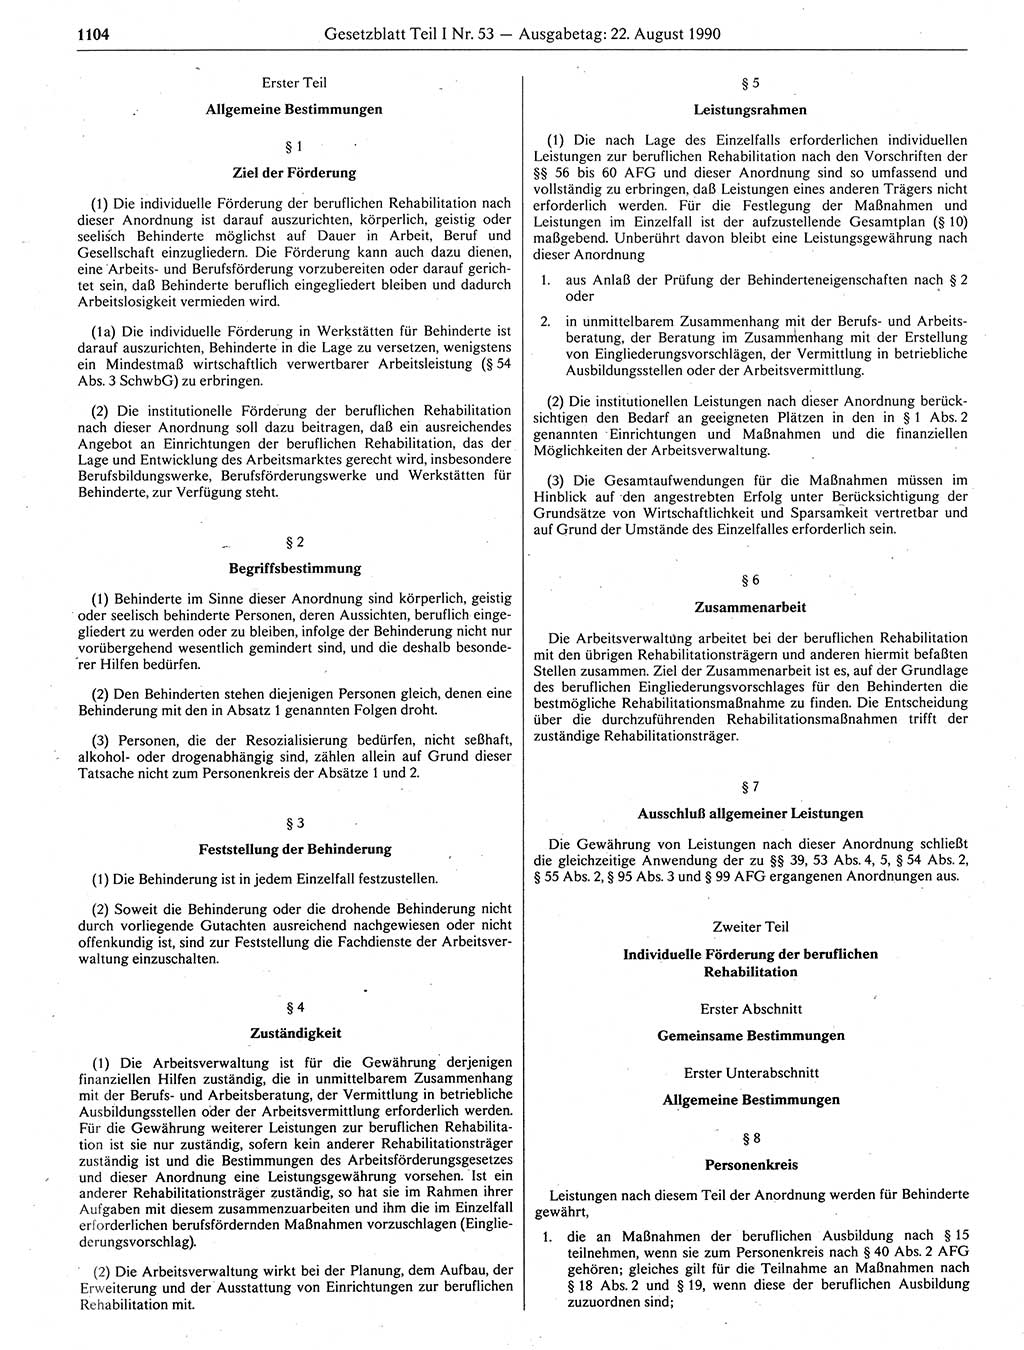 Gesetzblatt (GBl.) der Deutschen Demokratischen Republik (DDR) Teil Ⅰ 1990, Seite 1104 (GBl. DDR Ⅰ 1990, S. 1104)